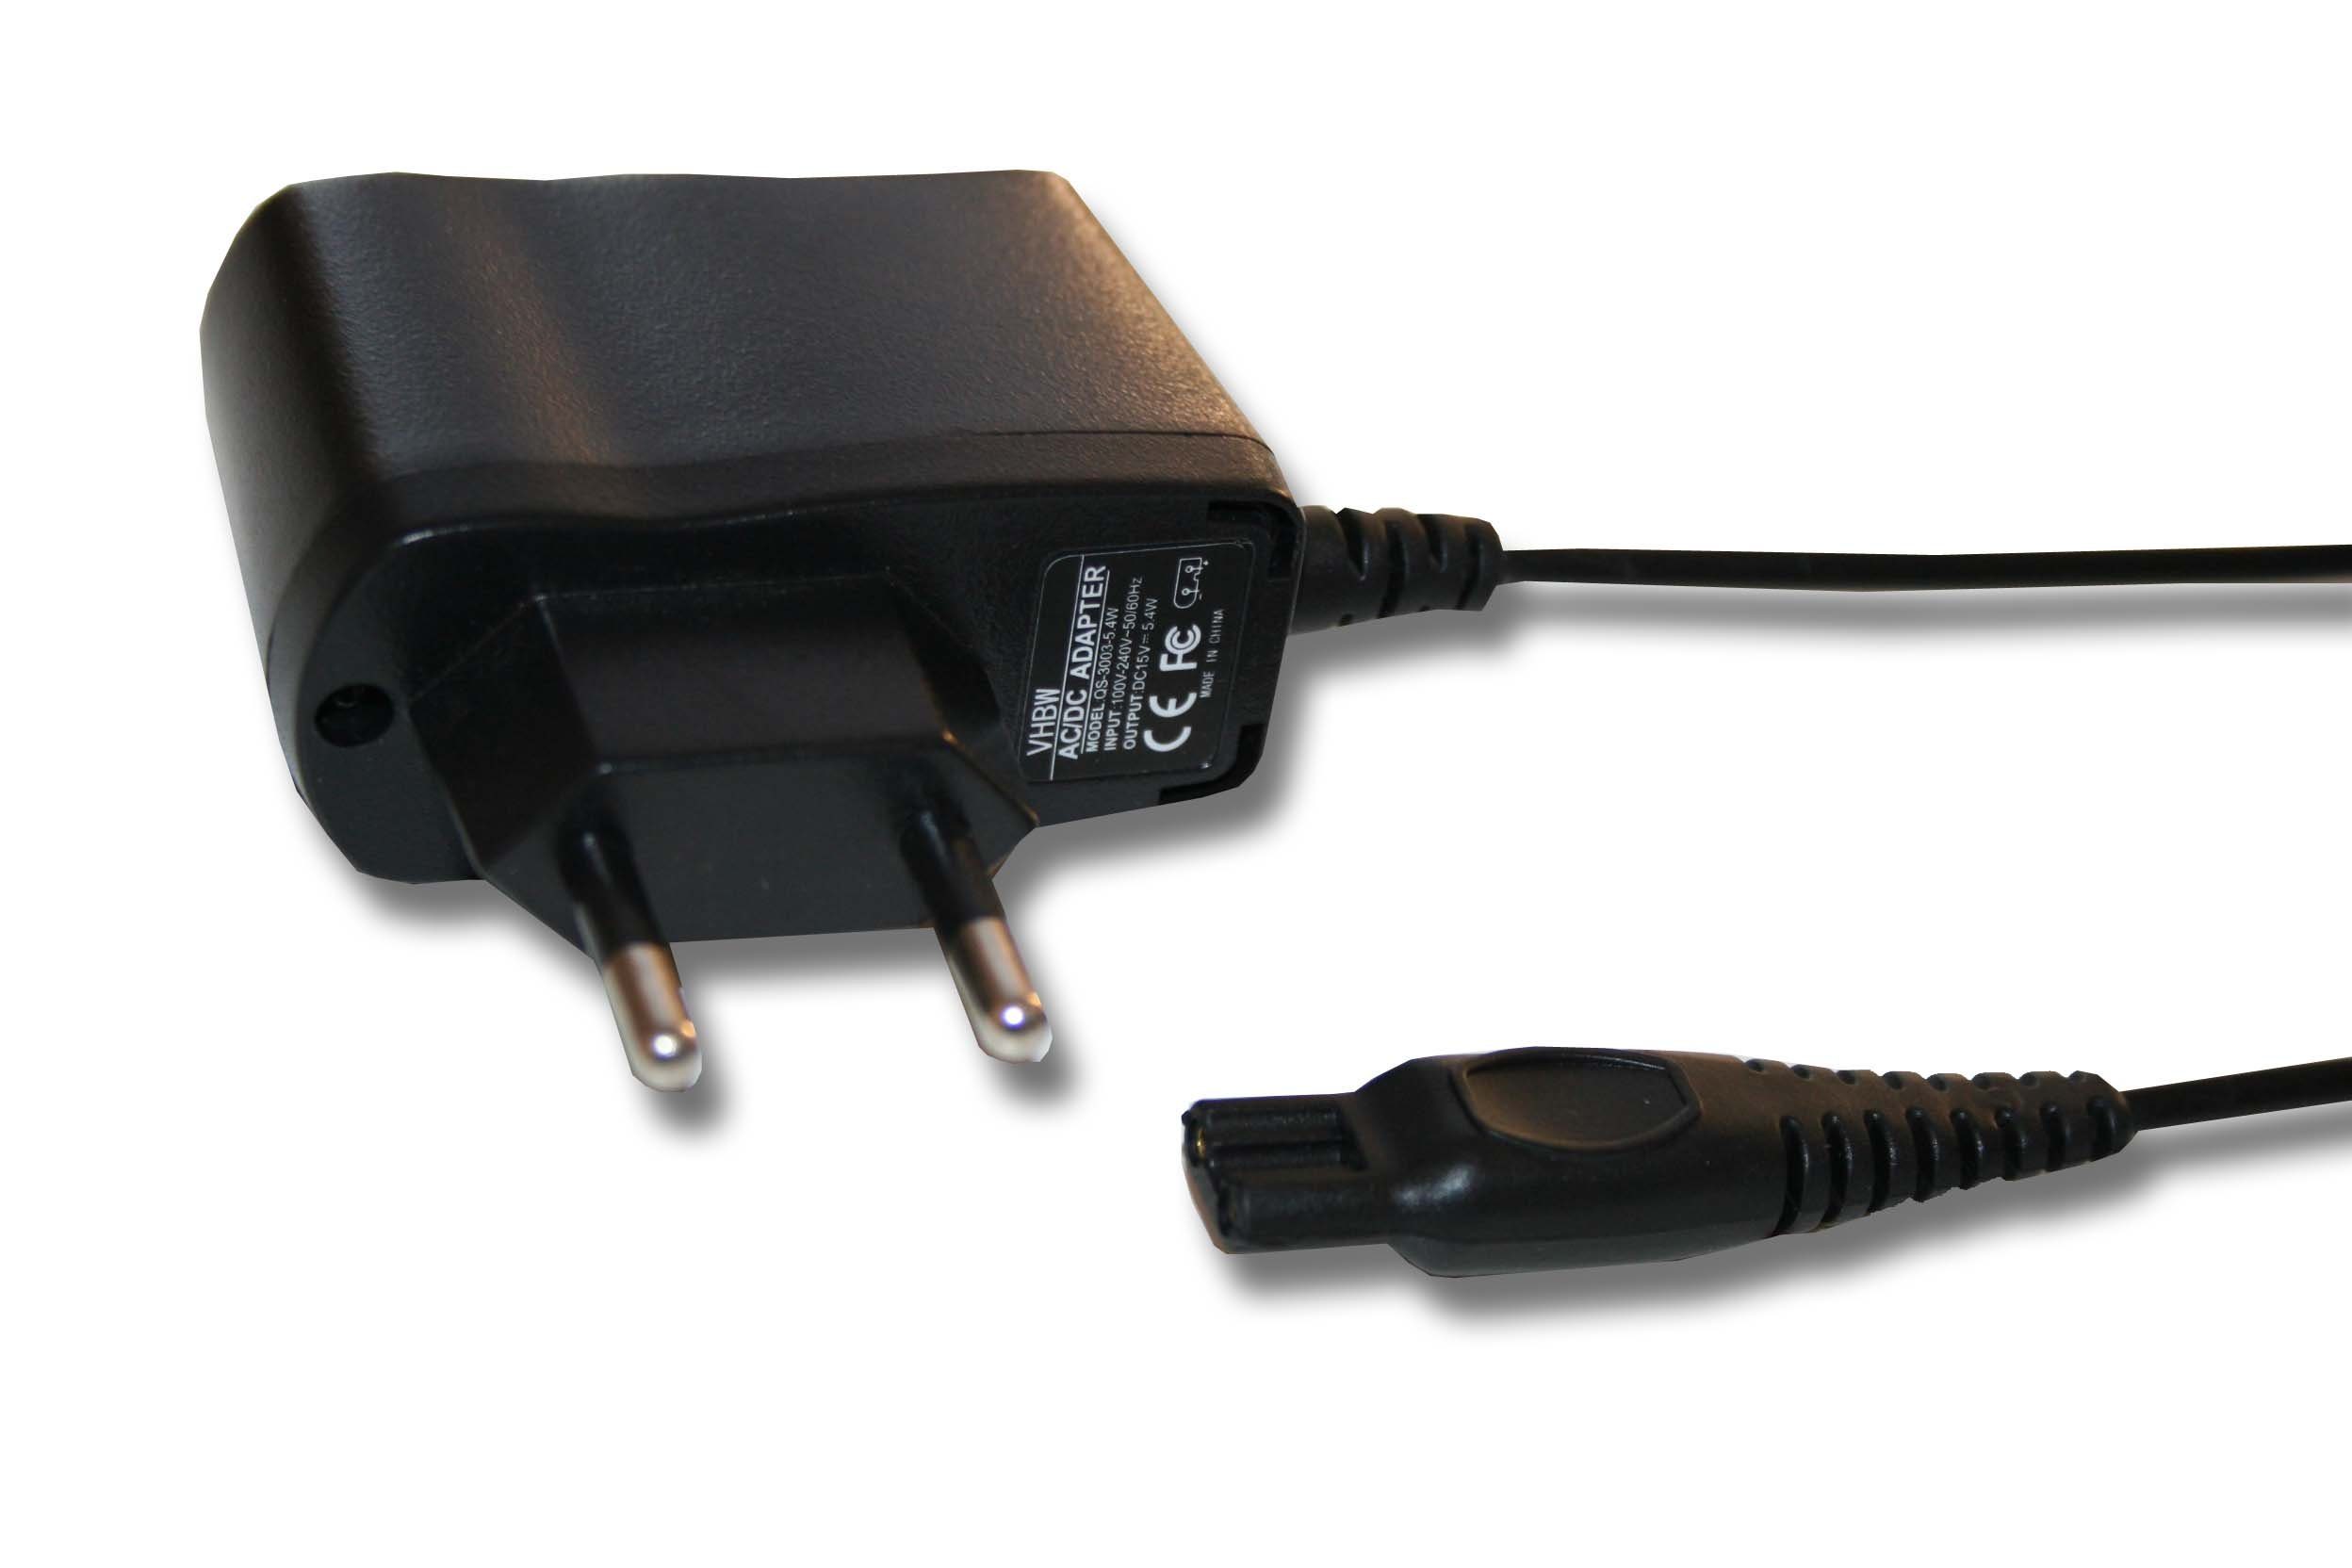 Ladekabel Netzteil Ladegerät für Philips Rasierer RQ1090 RQ1095 RQ11 RQ1150 